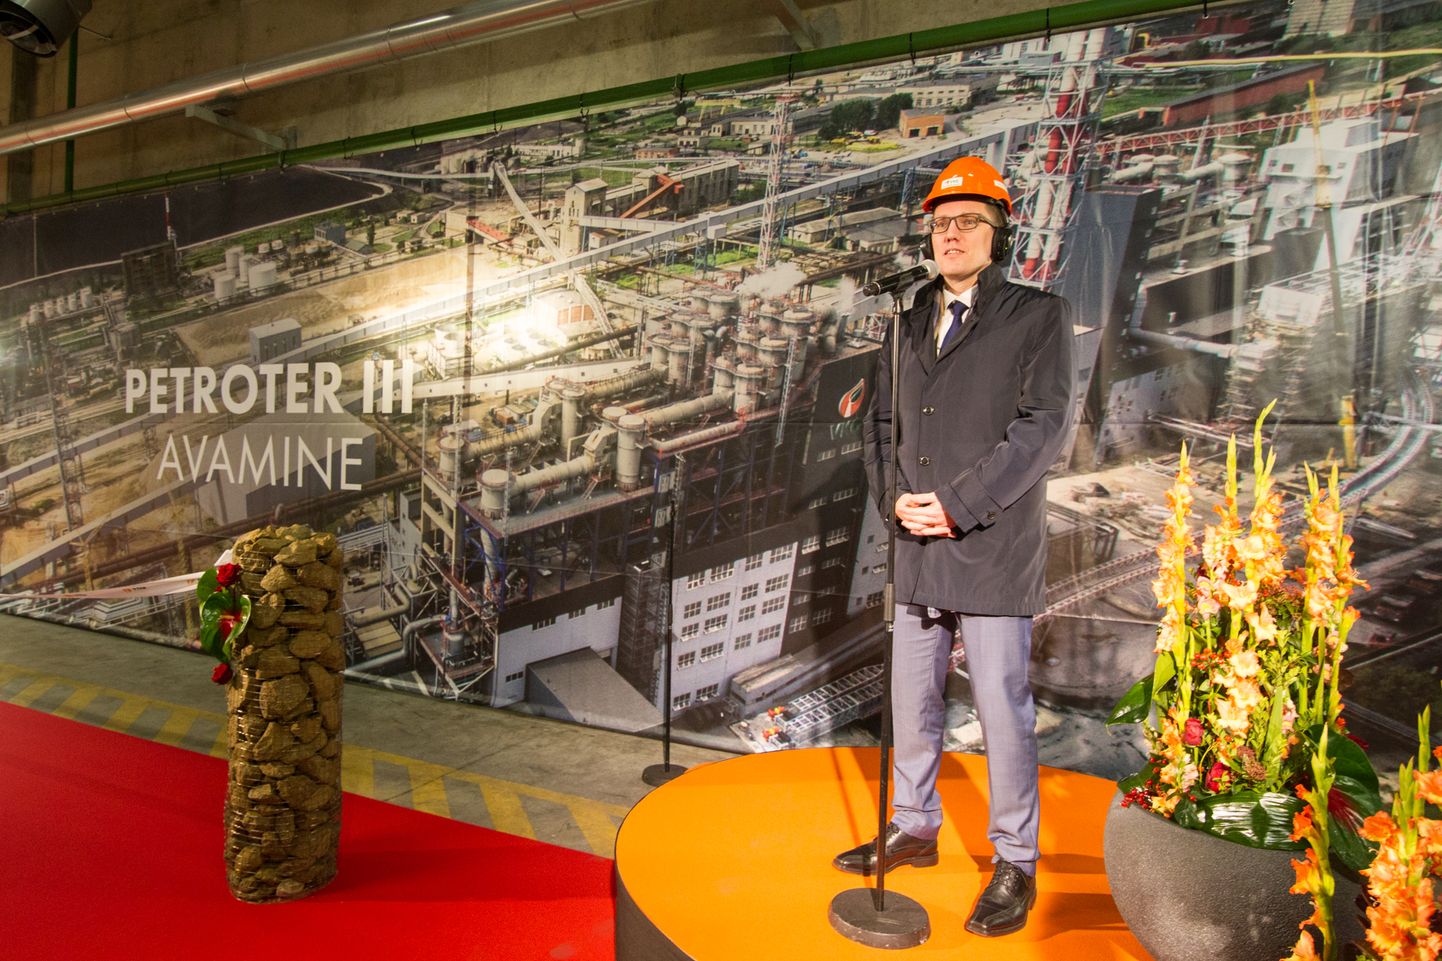 Кристен Михал на церемонии открытия третьего завода масел "Petroter" в ноябре 2015 года произнес речь, в которой одобрил создание заводов масел, поскольку они уменьшают влияние на окружающую среду и увеличивают эффективность использования сланца.